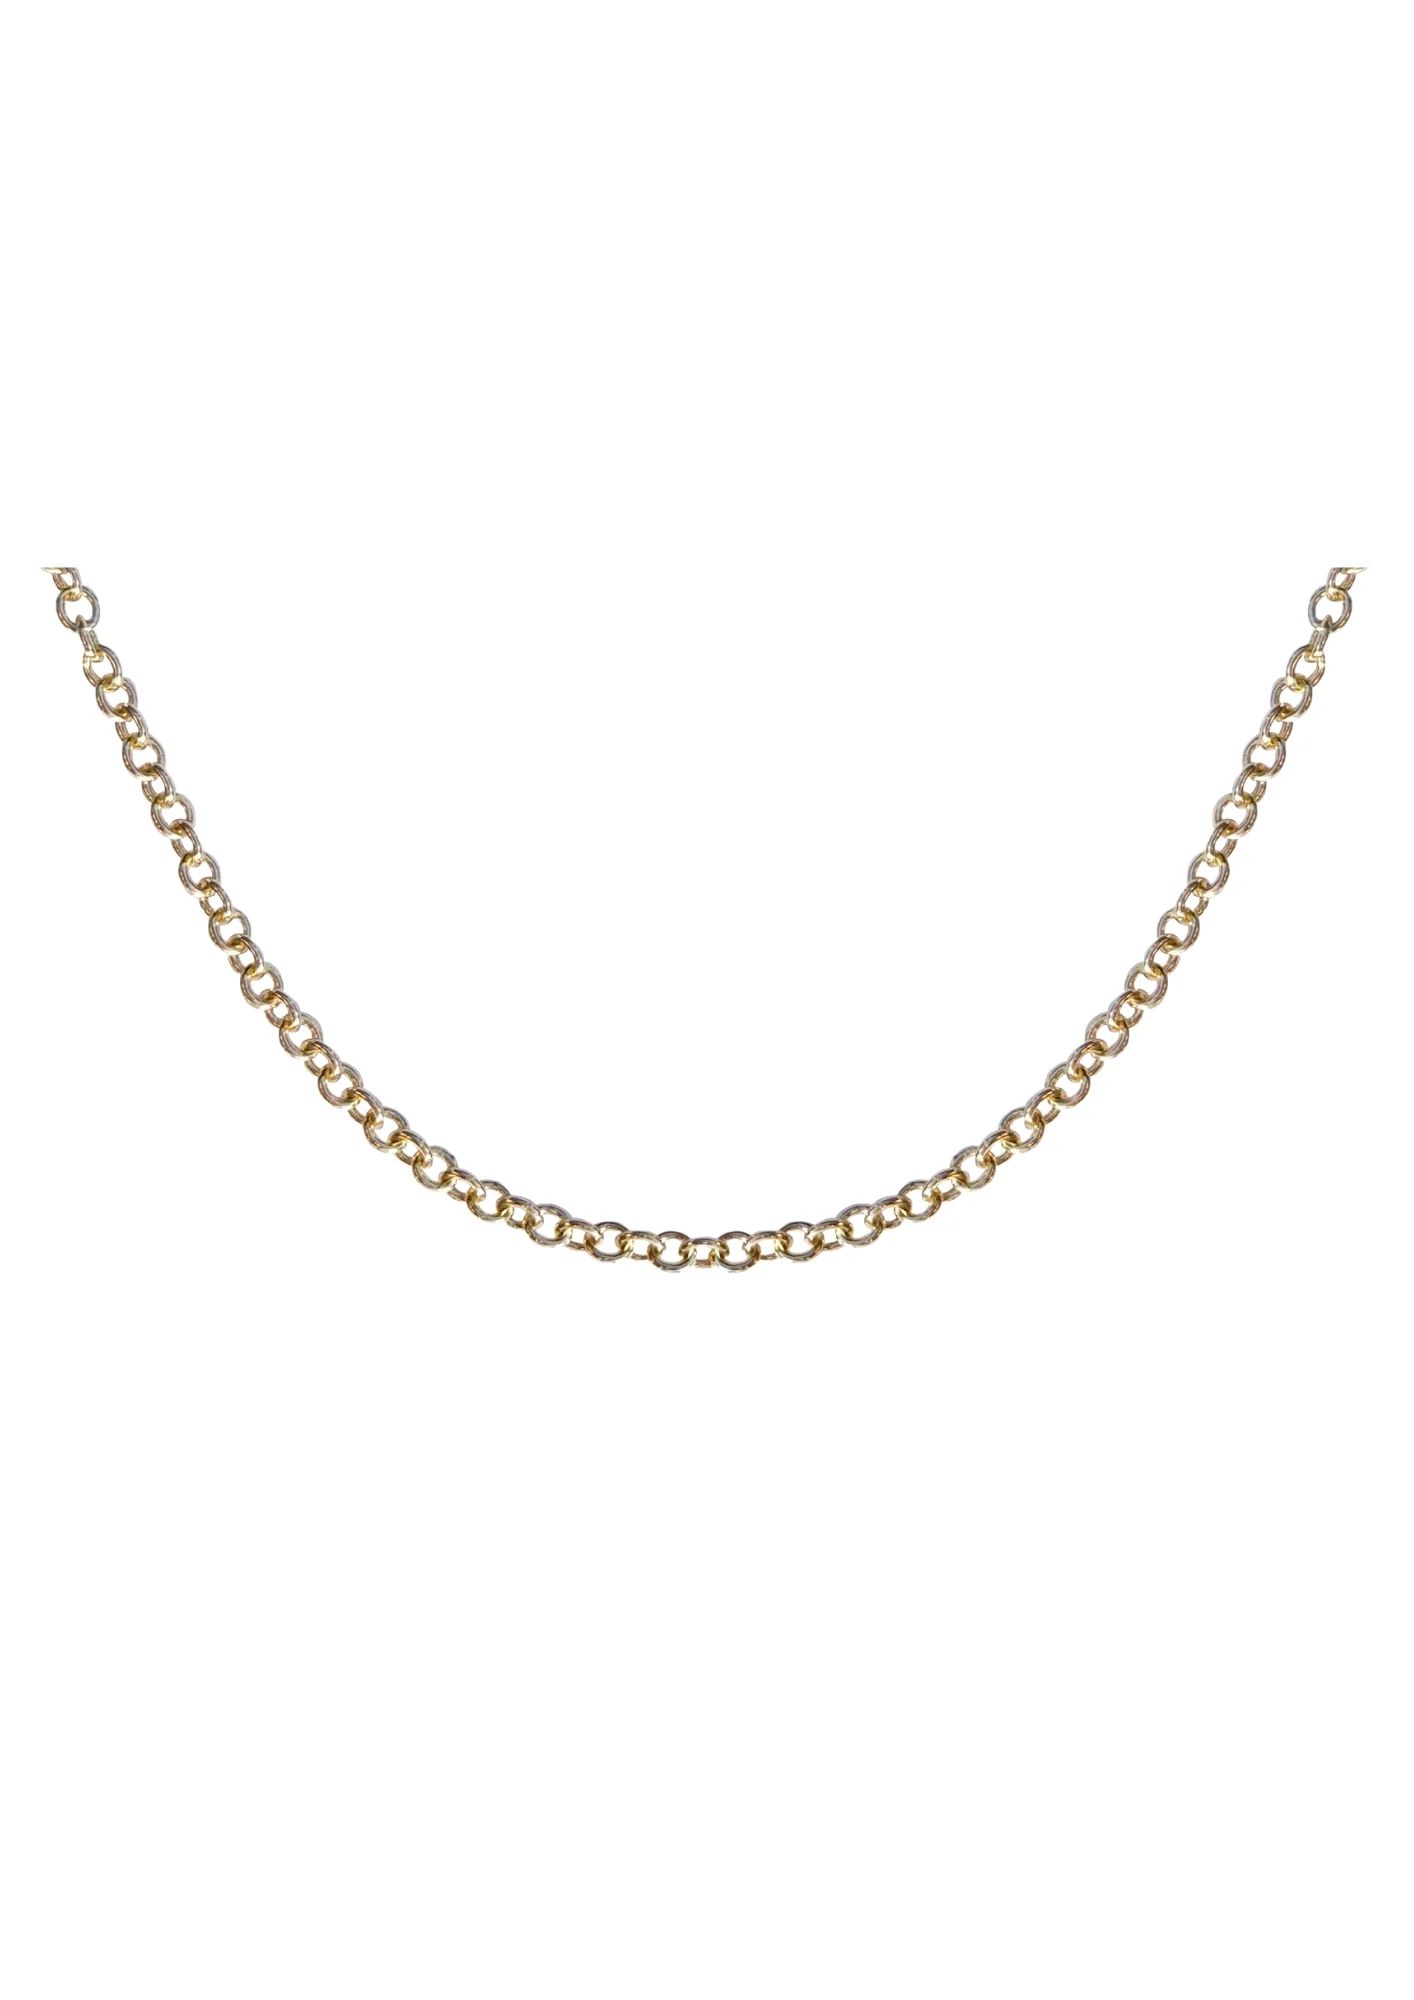 Charm Chain Necklace | Nicola Bathie Jewelry